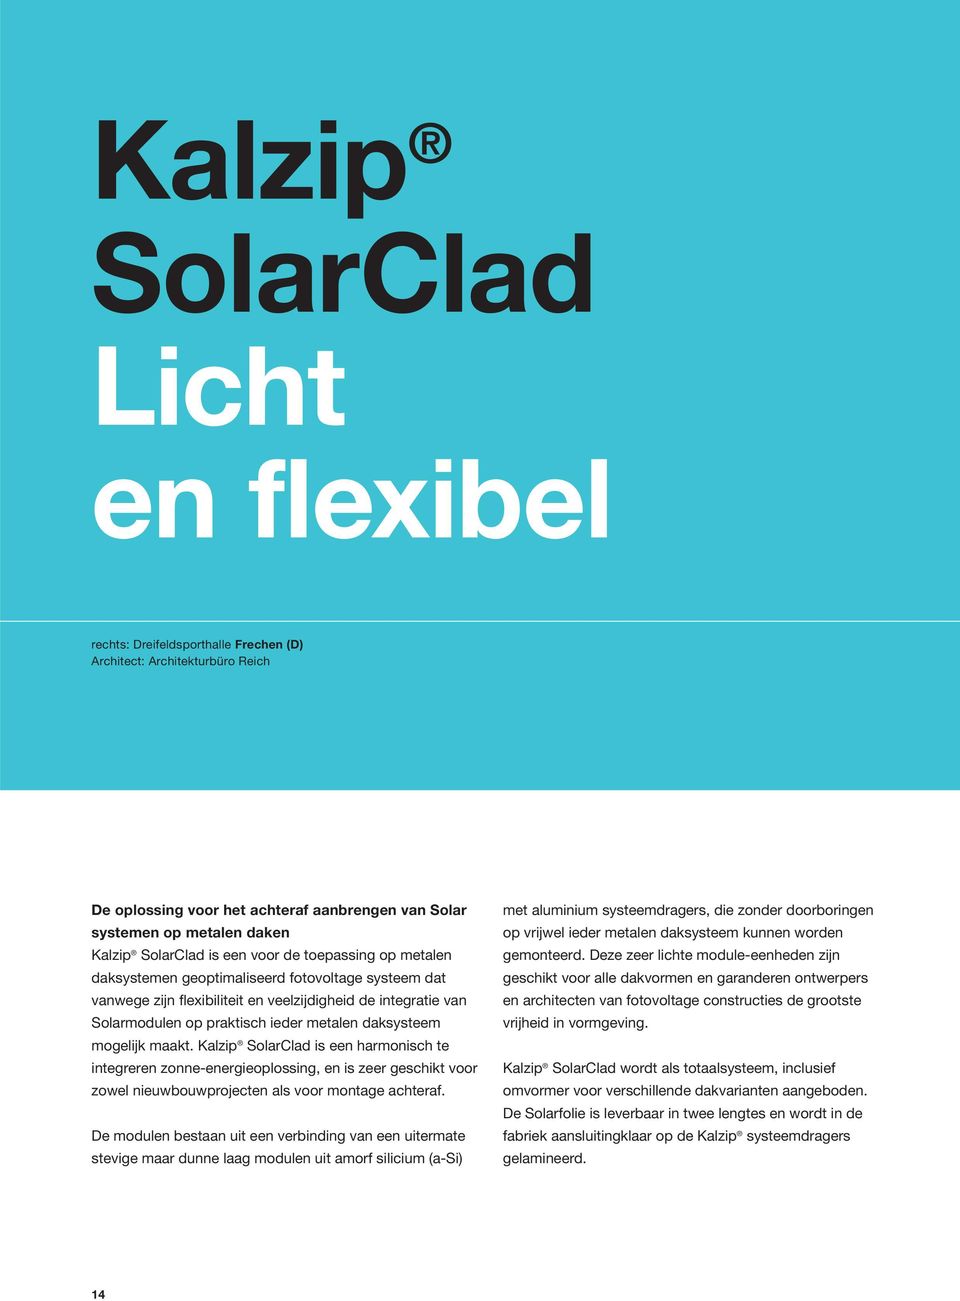 metalen daksysteem mogelijk maakt. Kalzip SolarClad is een harmonisch te integreren zonne-energieoplossing, en is zeer geschikt voor zowel nieuwbouwprojecten als voor montage achteraf.